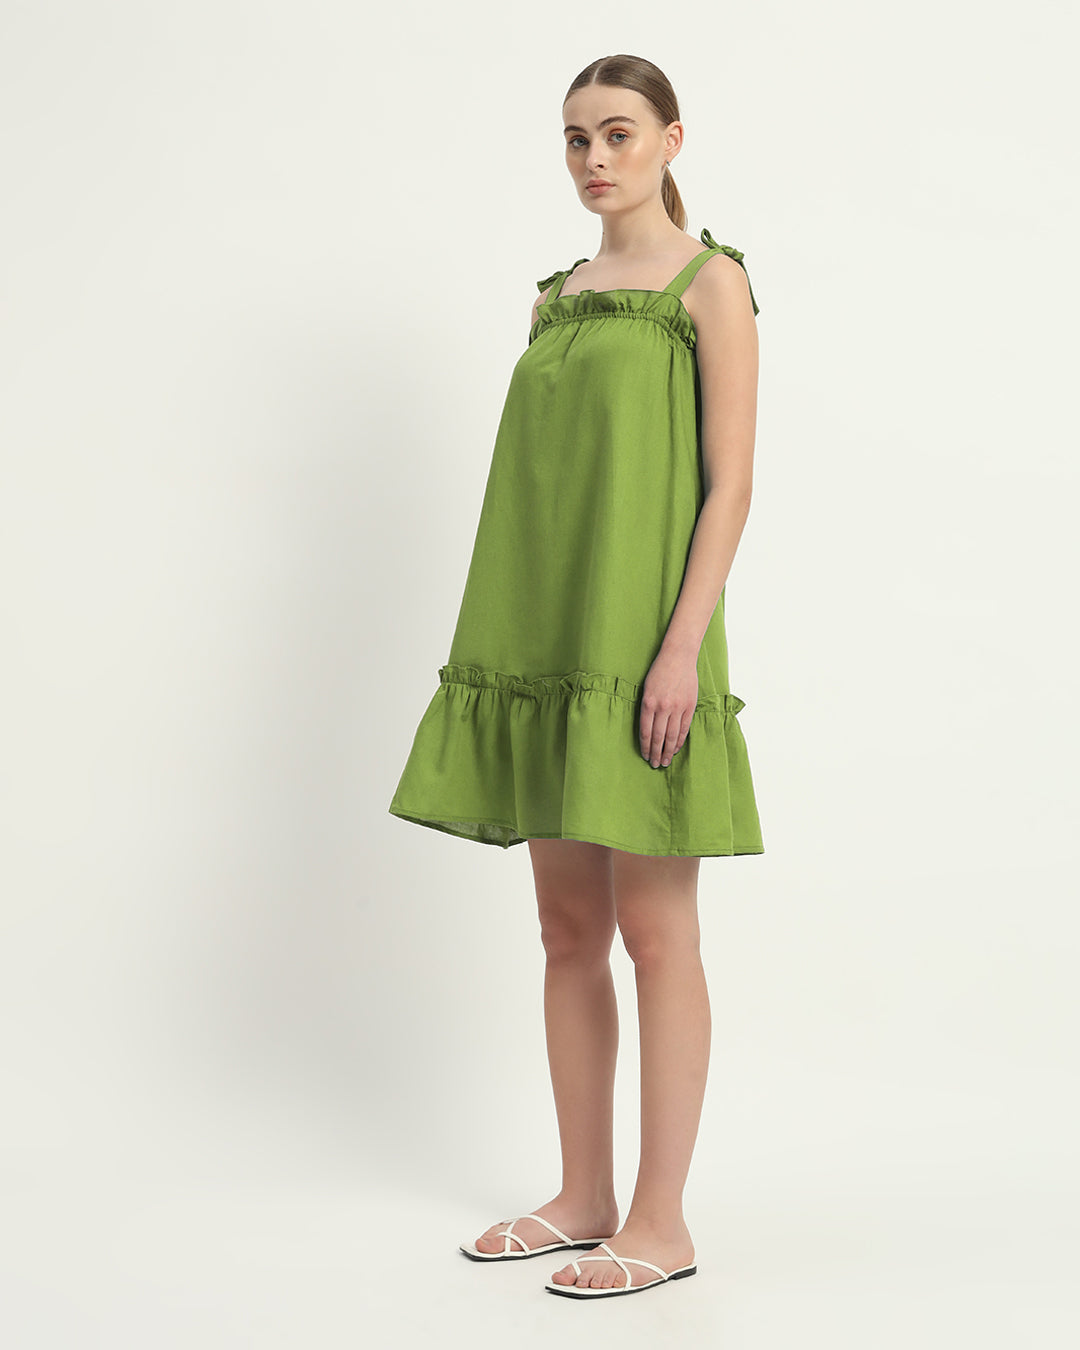 The Fern Amalfi Cotton Dress